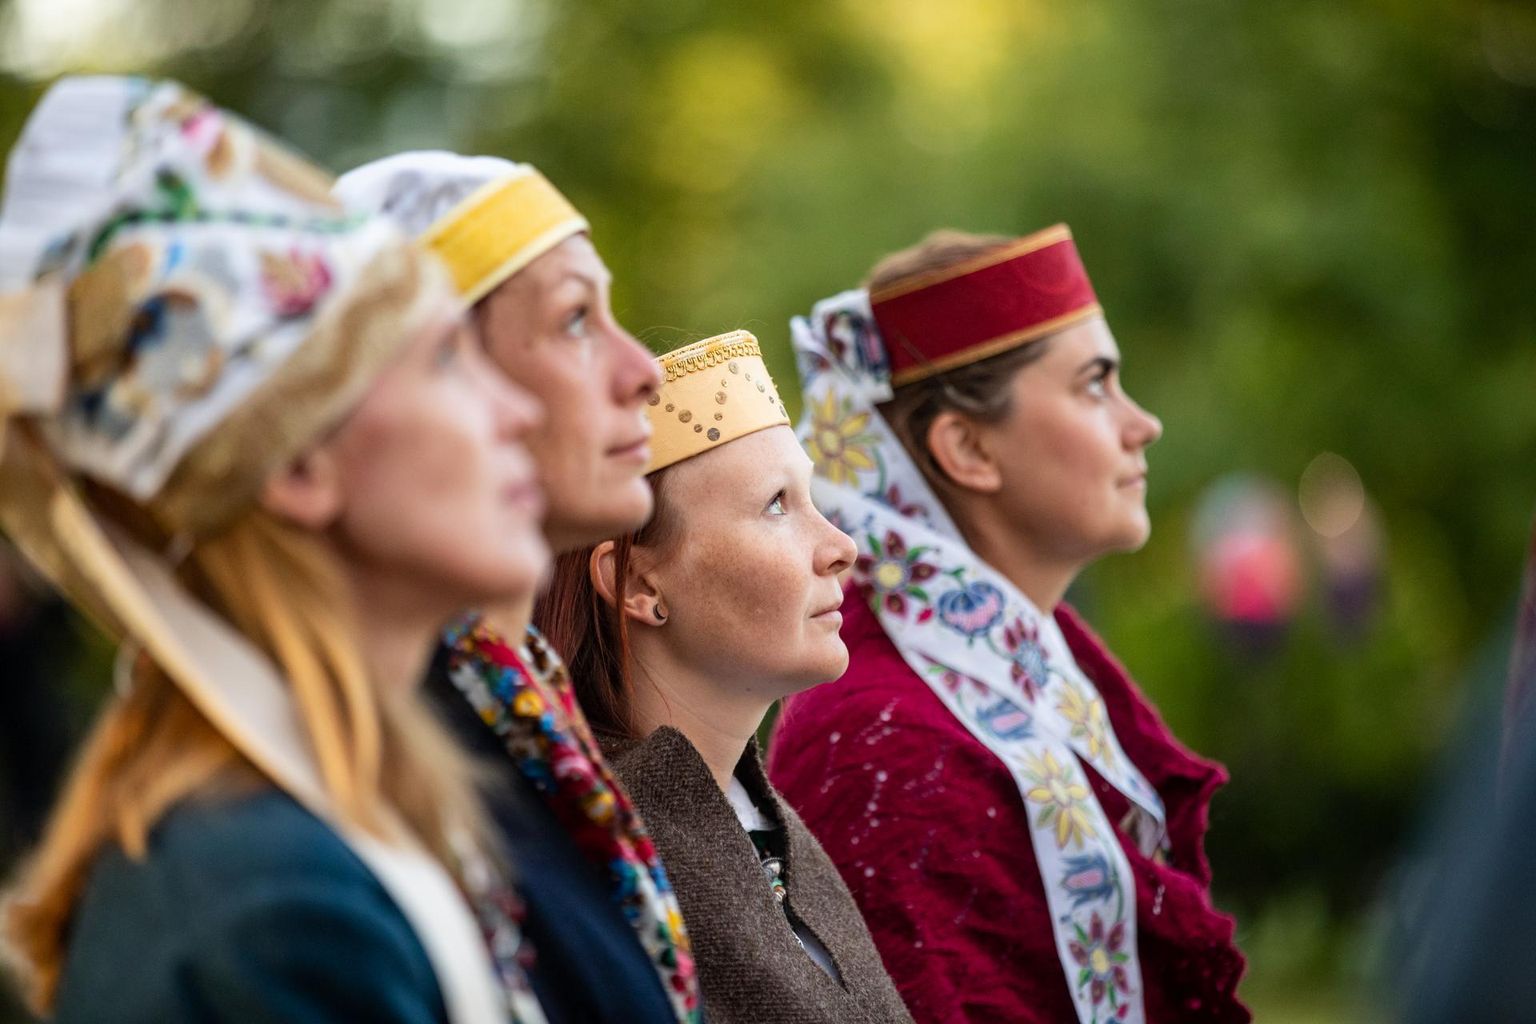 Tikitud tanud ja lintidega pärjad. Kuidas naisterahvad Eestis pead katsid, on ühtaegu nii kunstivorm kui ka moekeel – igal asjal on sõnum, tanu või pärja kandmine näitas nii staatust kui ka perekonnaseisu.